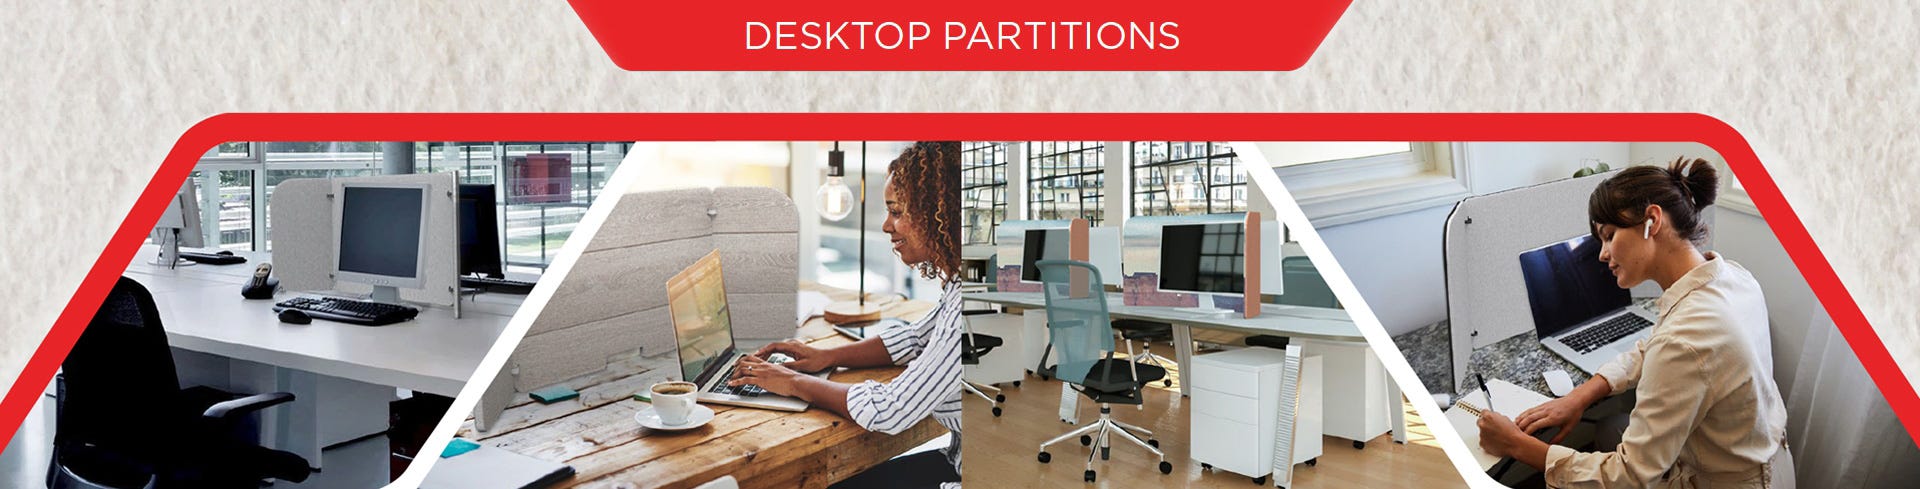 Desktop partitions